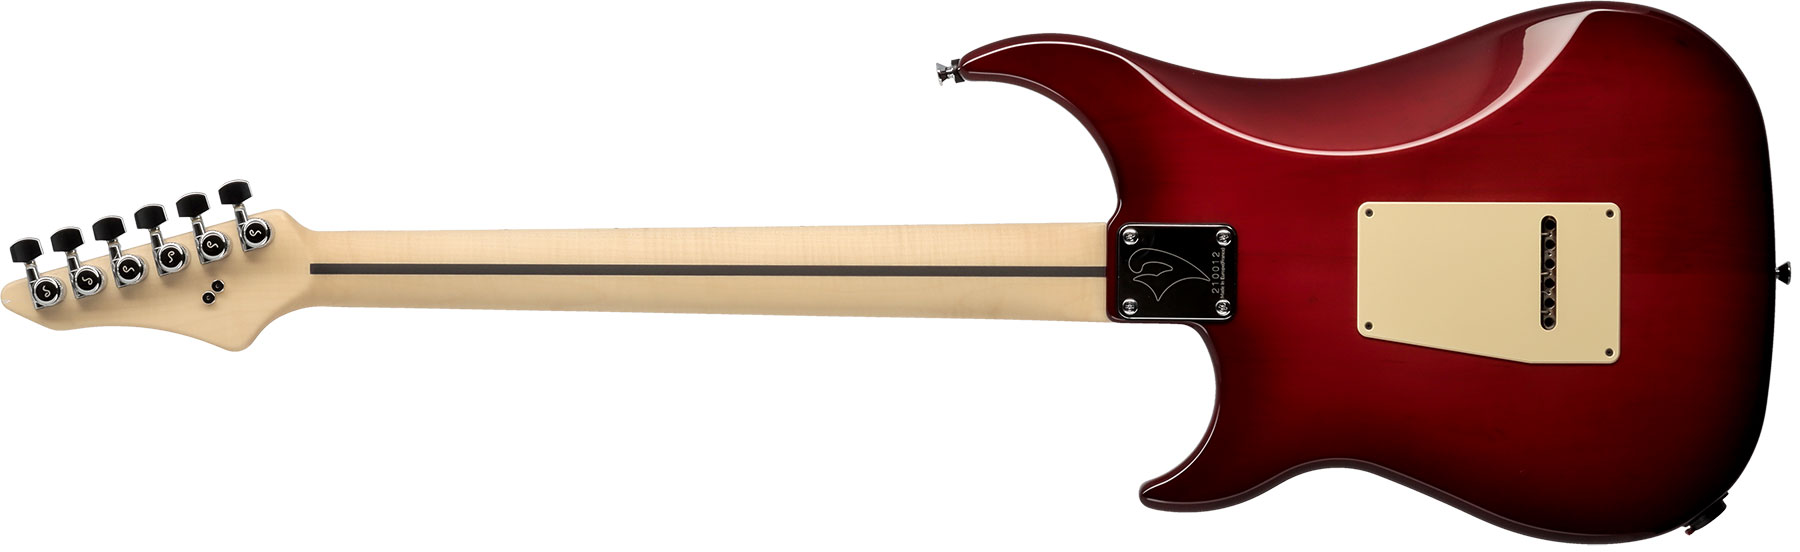 Vigier Excalibur Supraa Hsh Trem Mn - Clear Red - Str shape electric guitar - Variation 1